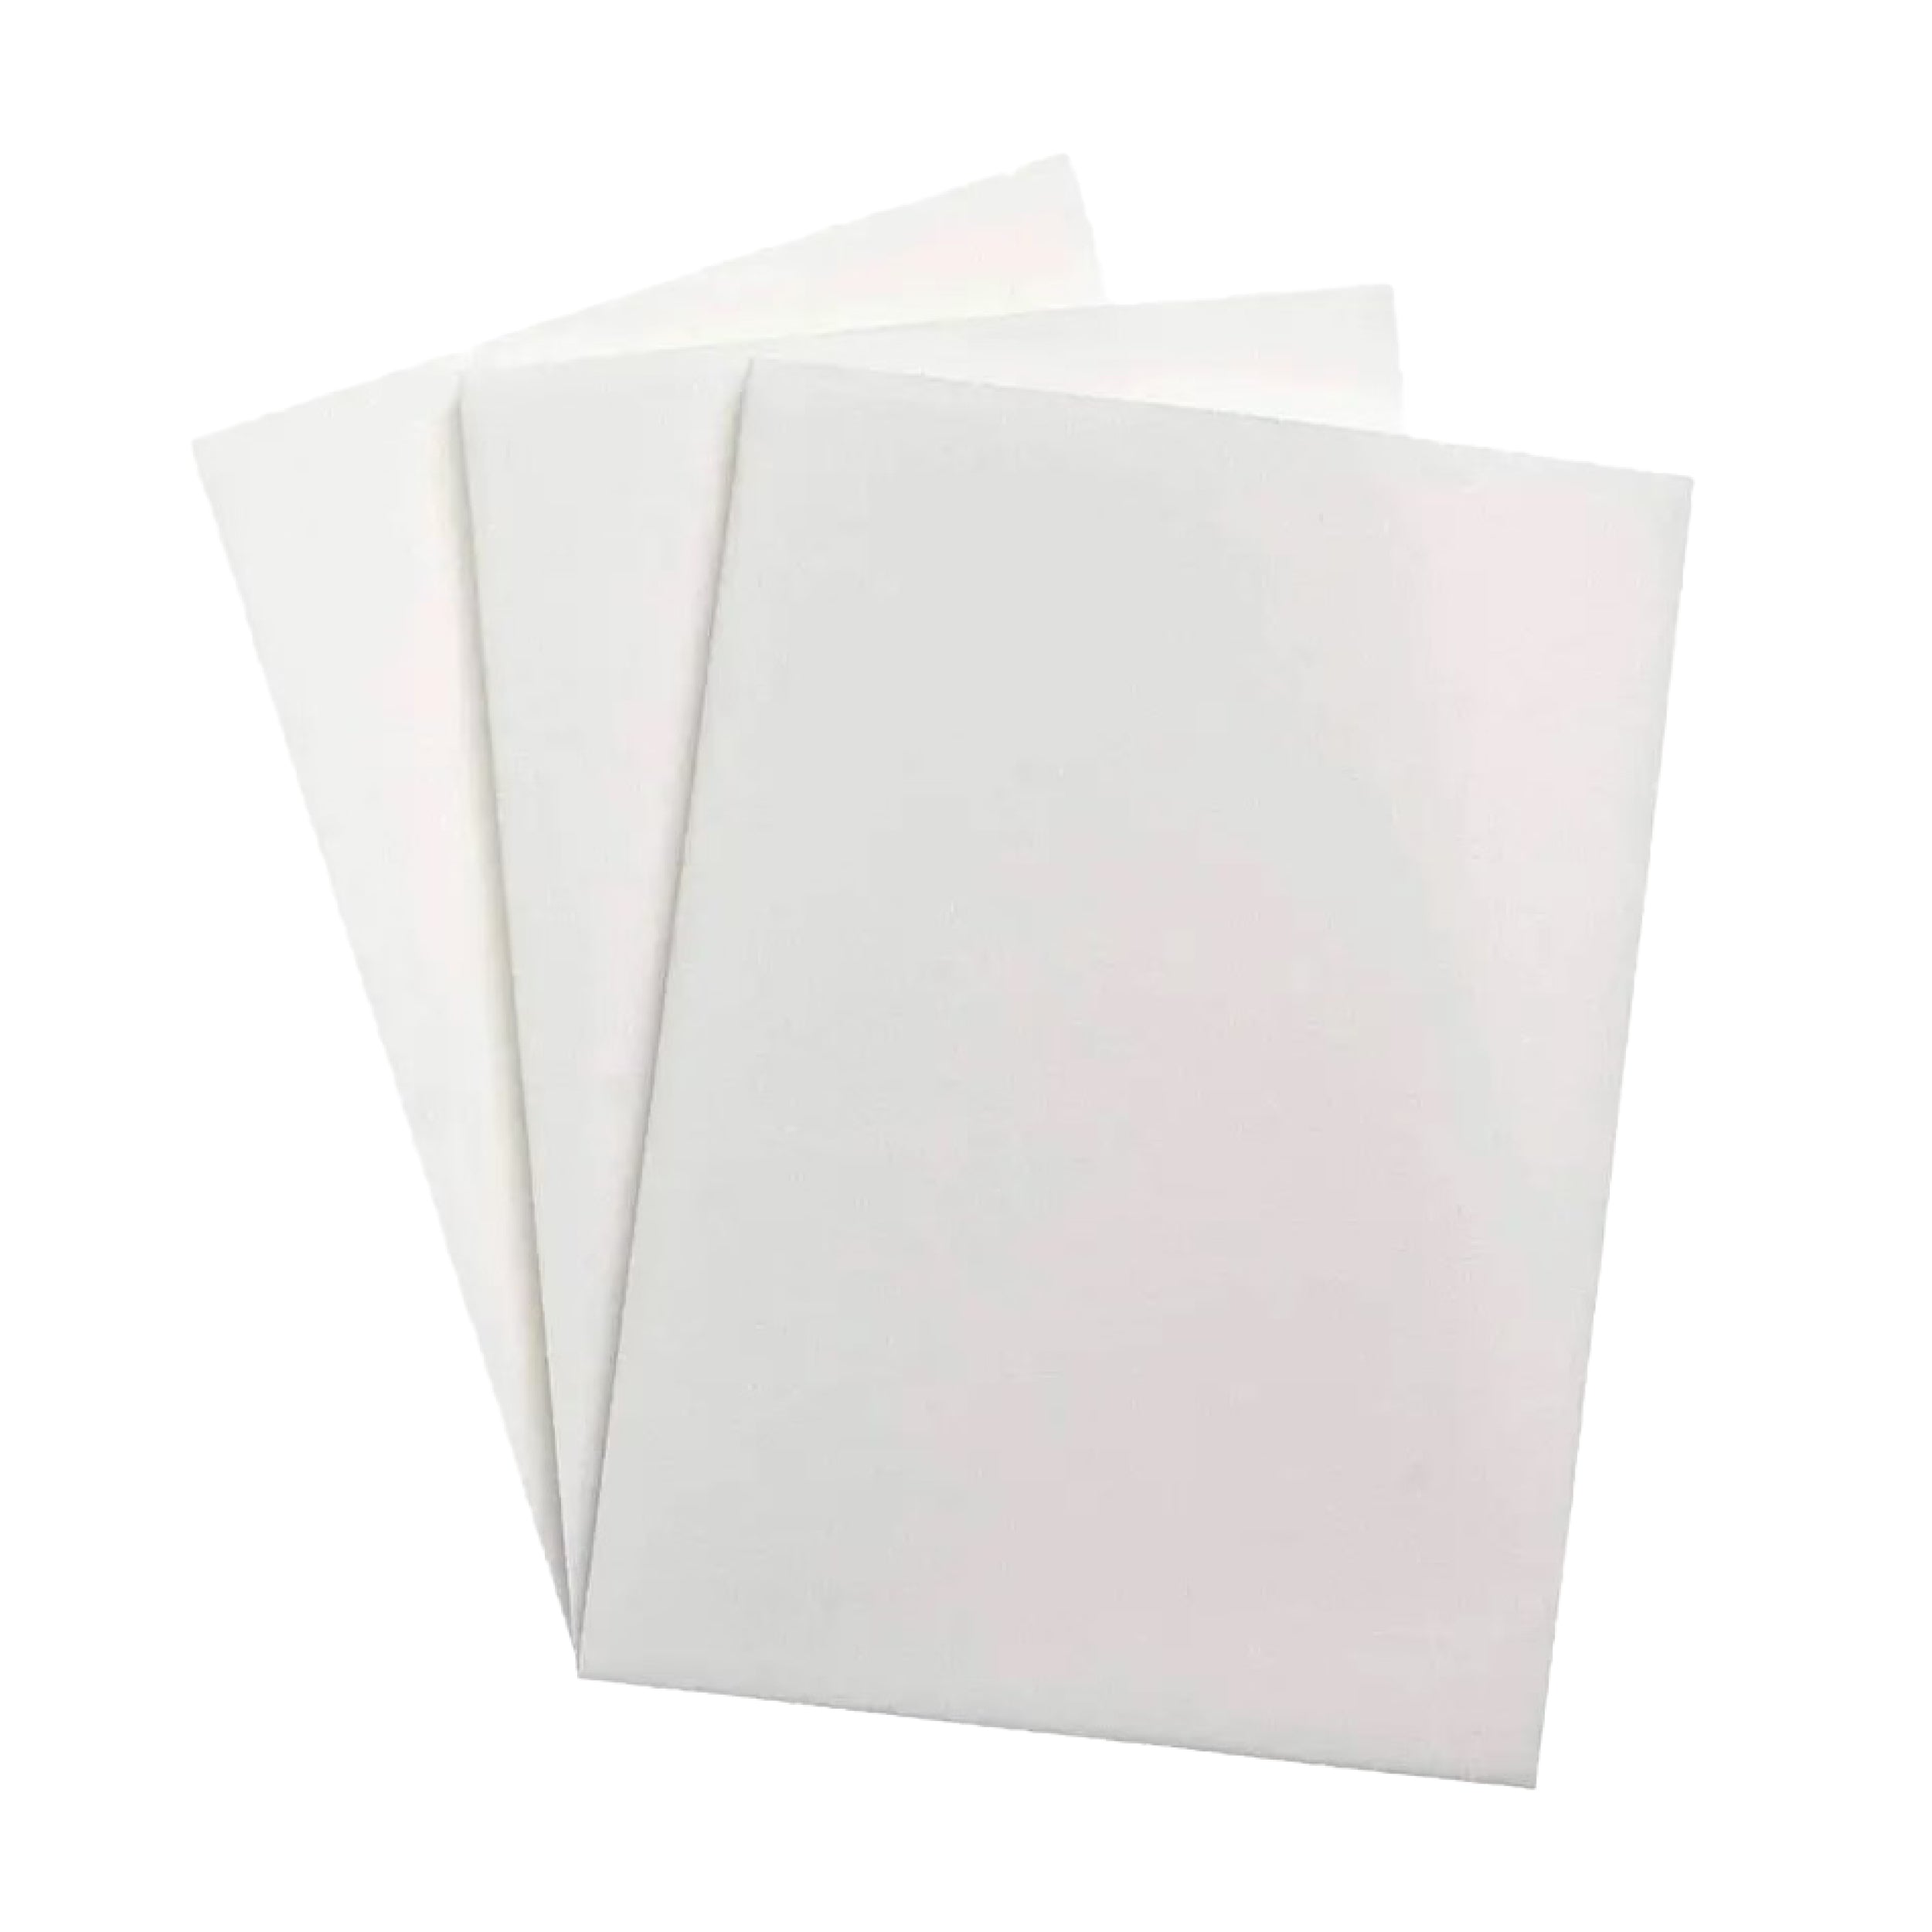 T007 Lipo Foam + Central Board – The Pink Room Shapewear, Foam